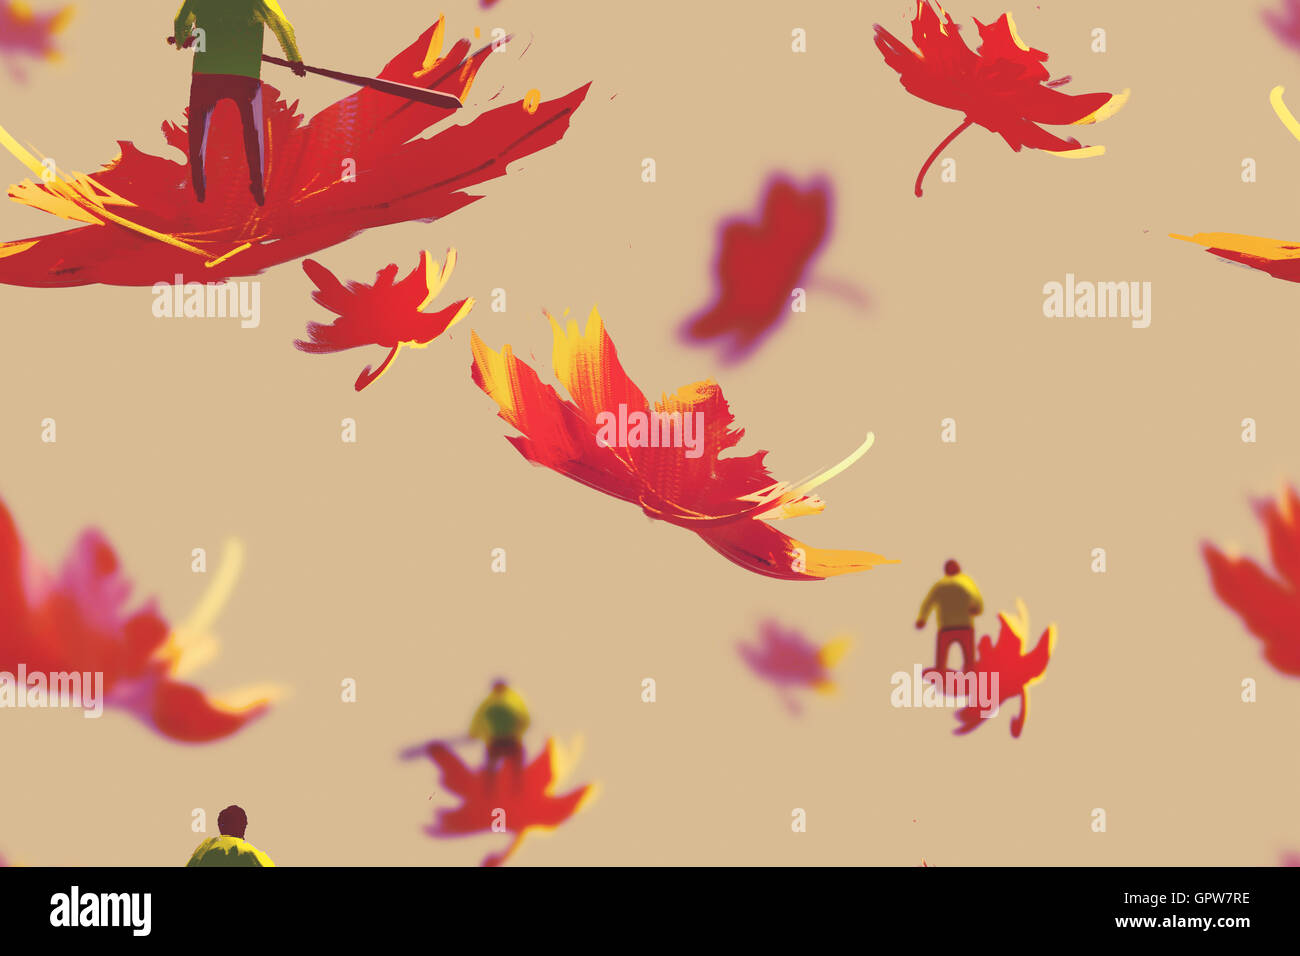 Modello senza giunture di piccoli uomini su foglie di acero,autunno concetto,illustrazione pittura Foto Stock